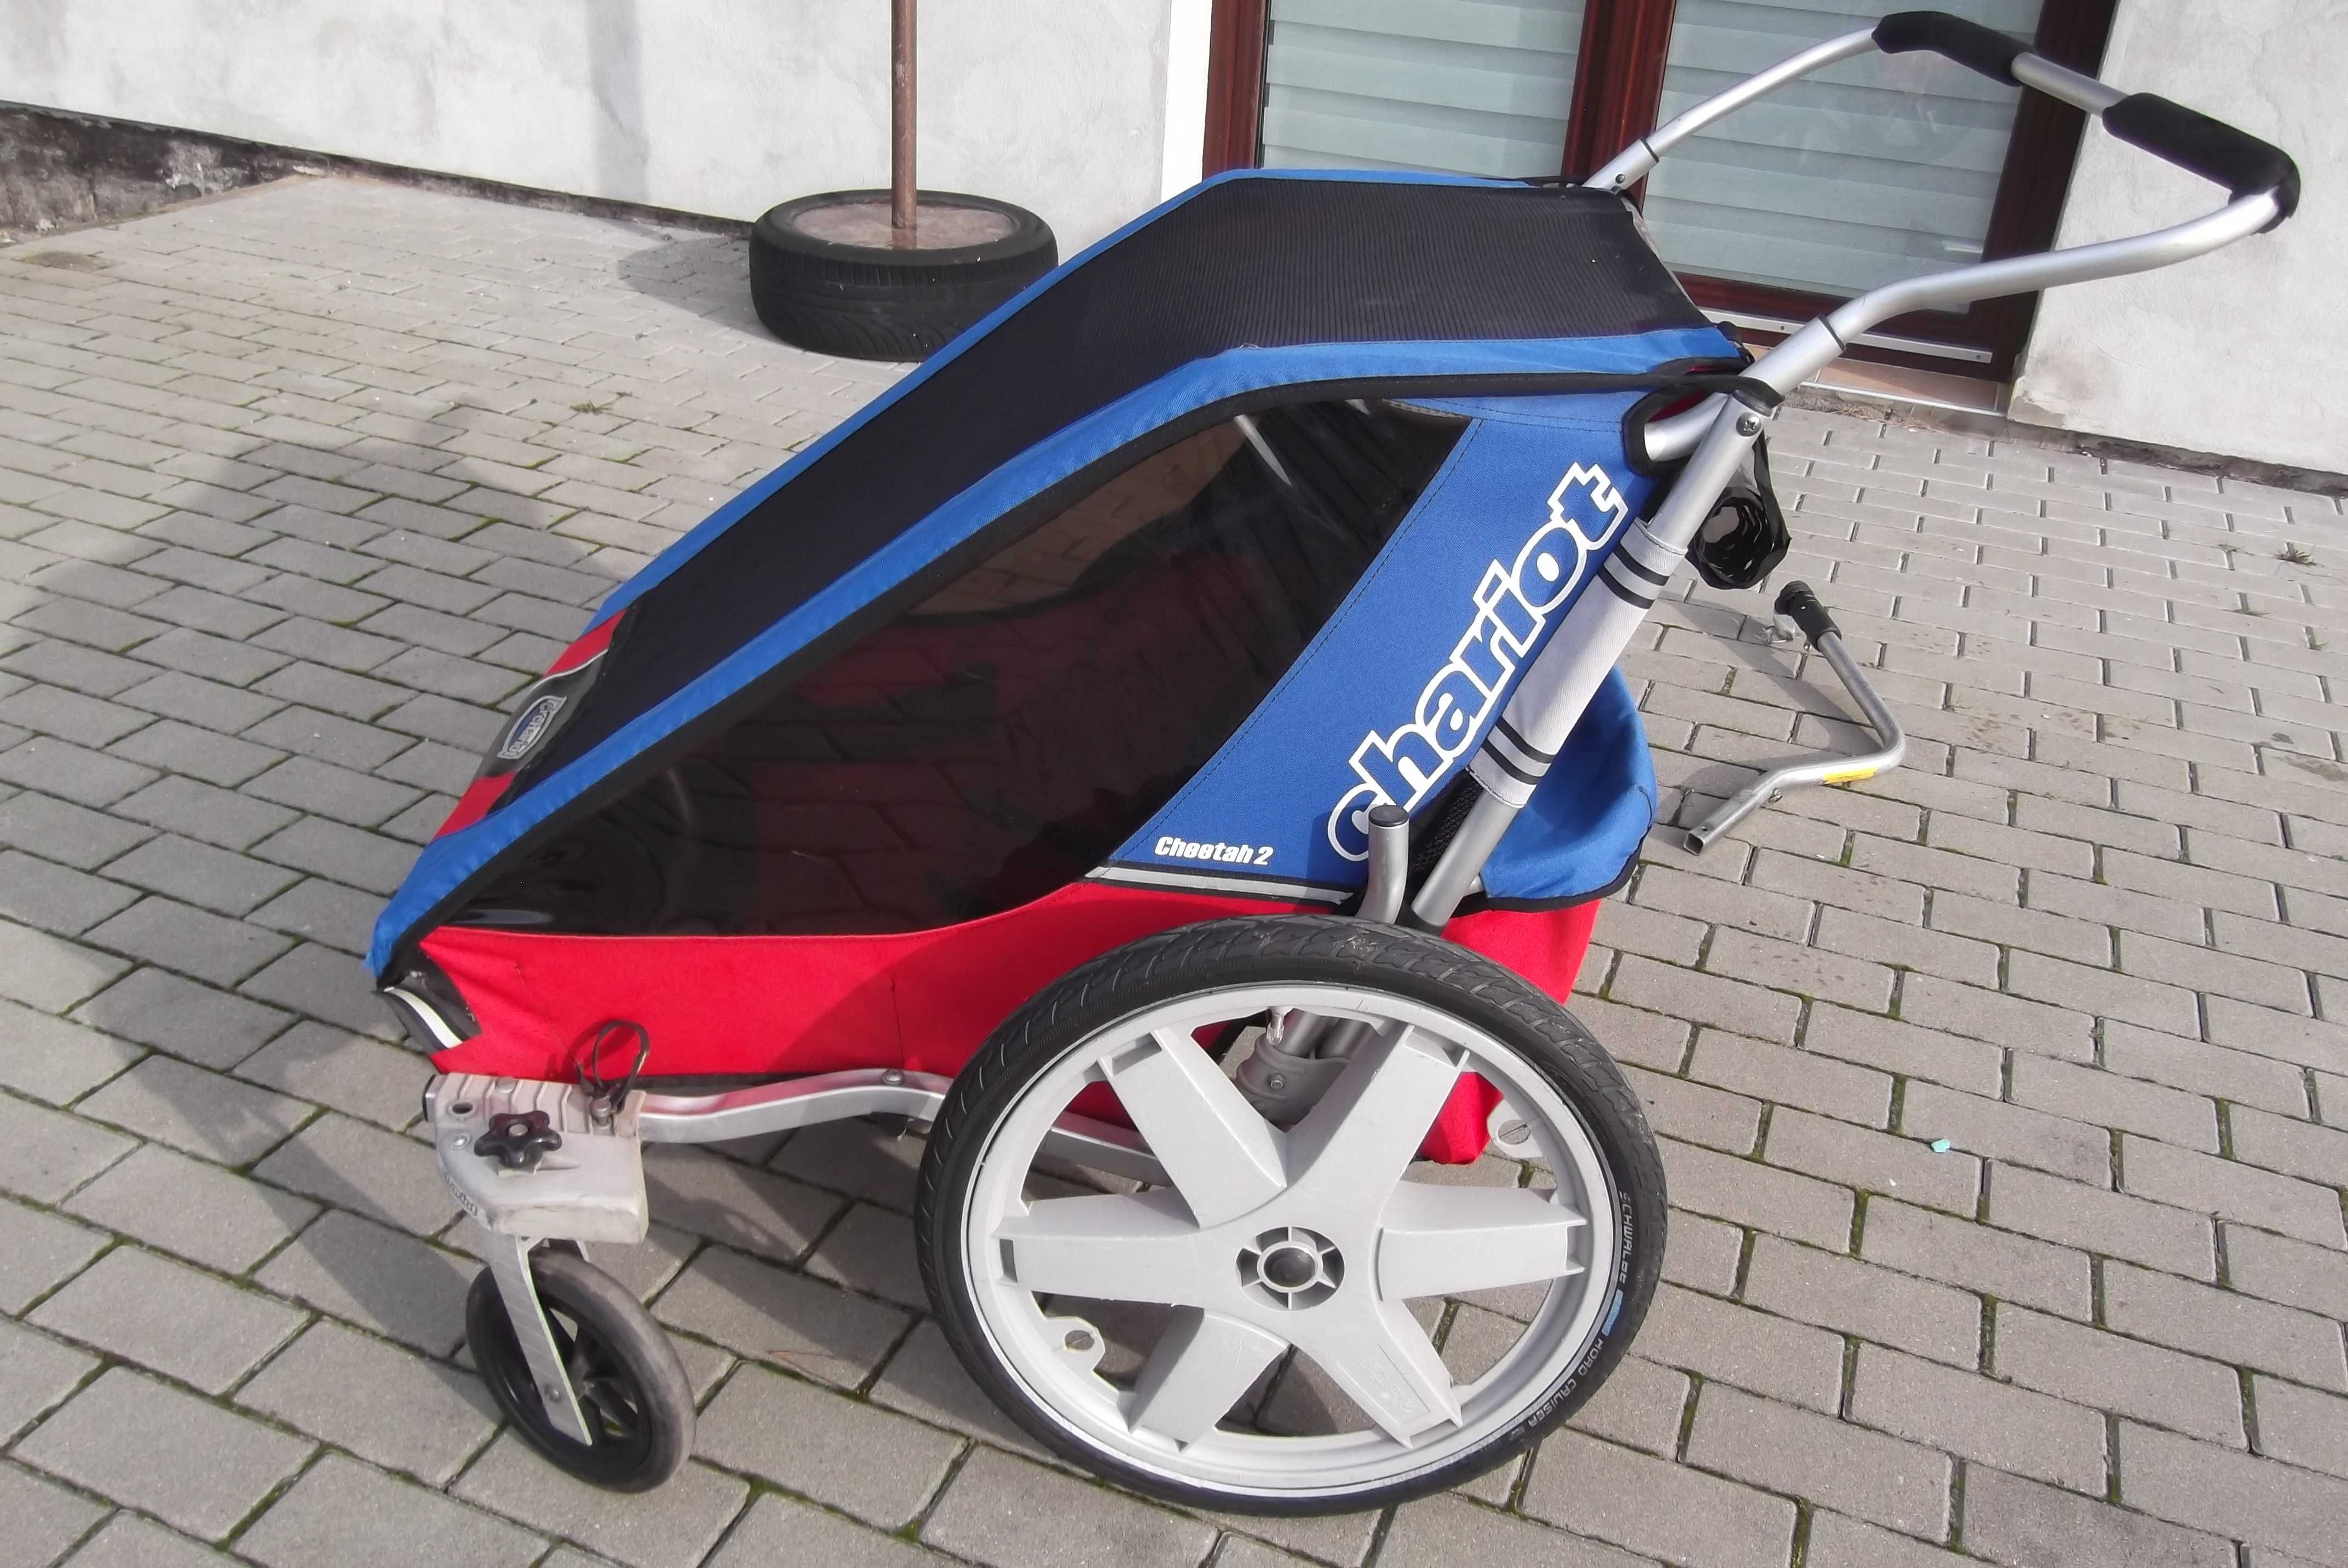 Riksza wózek ,przyczepka do roweru rowerowa Chariot cheetah 2 by thule